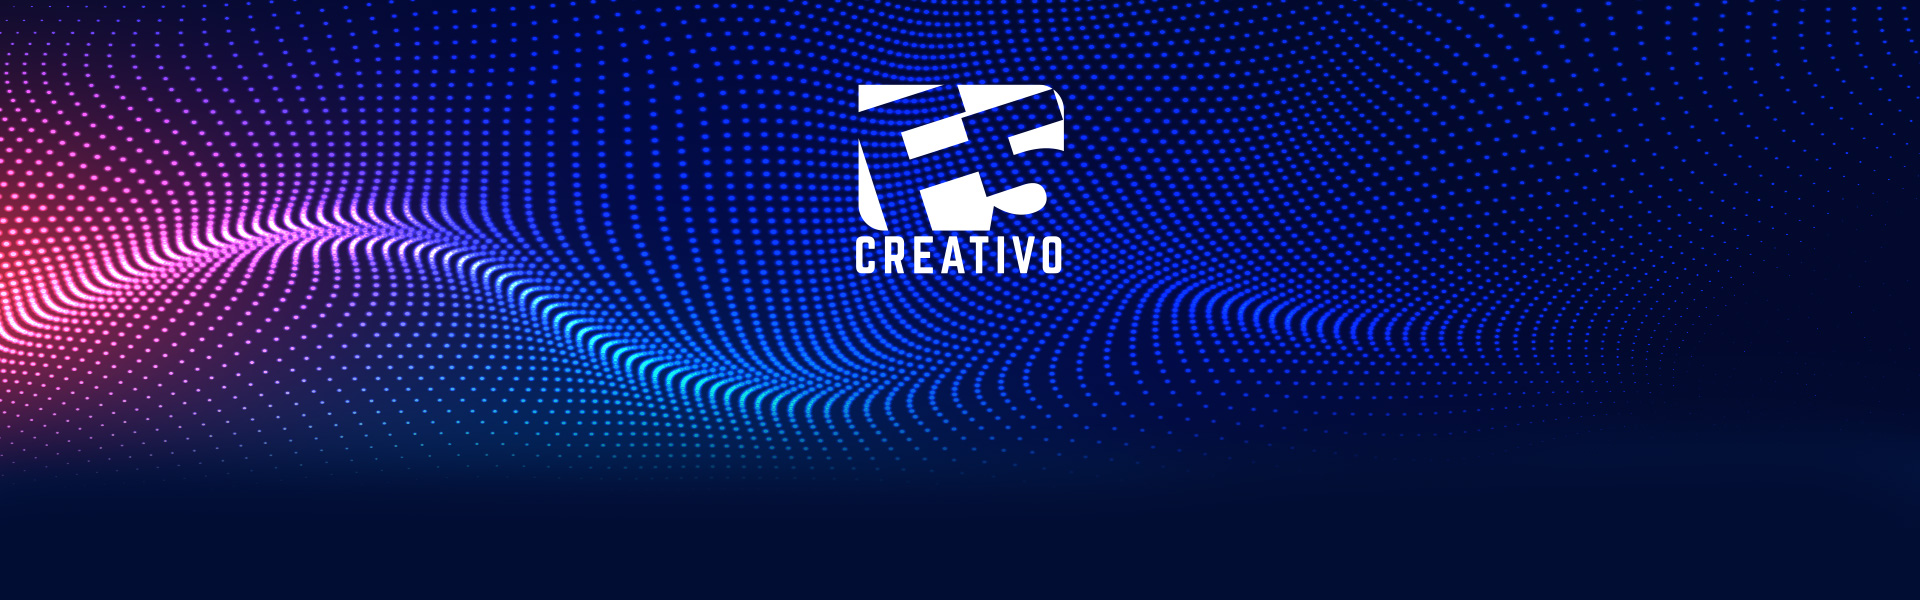 F5 creativo - Ciclo de videopodcasts sobre comunicación y tecnología.